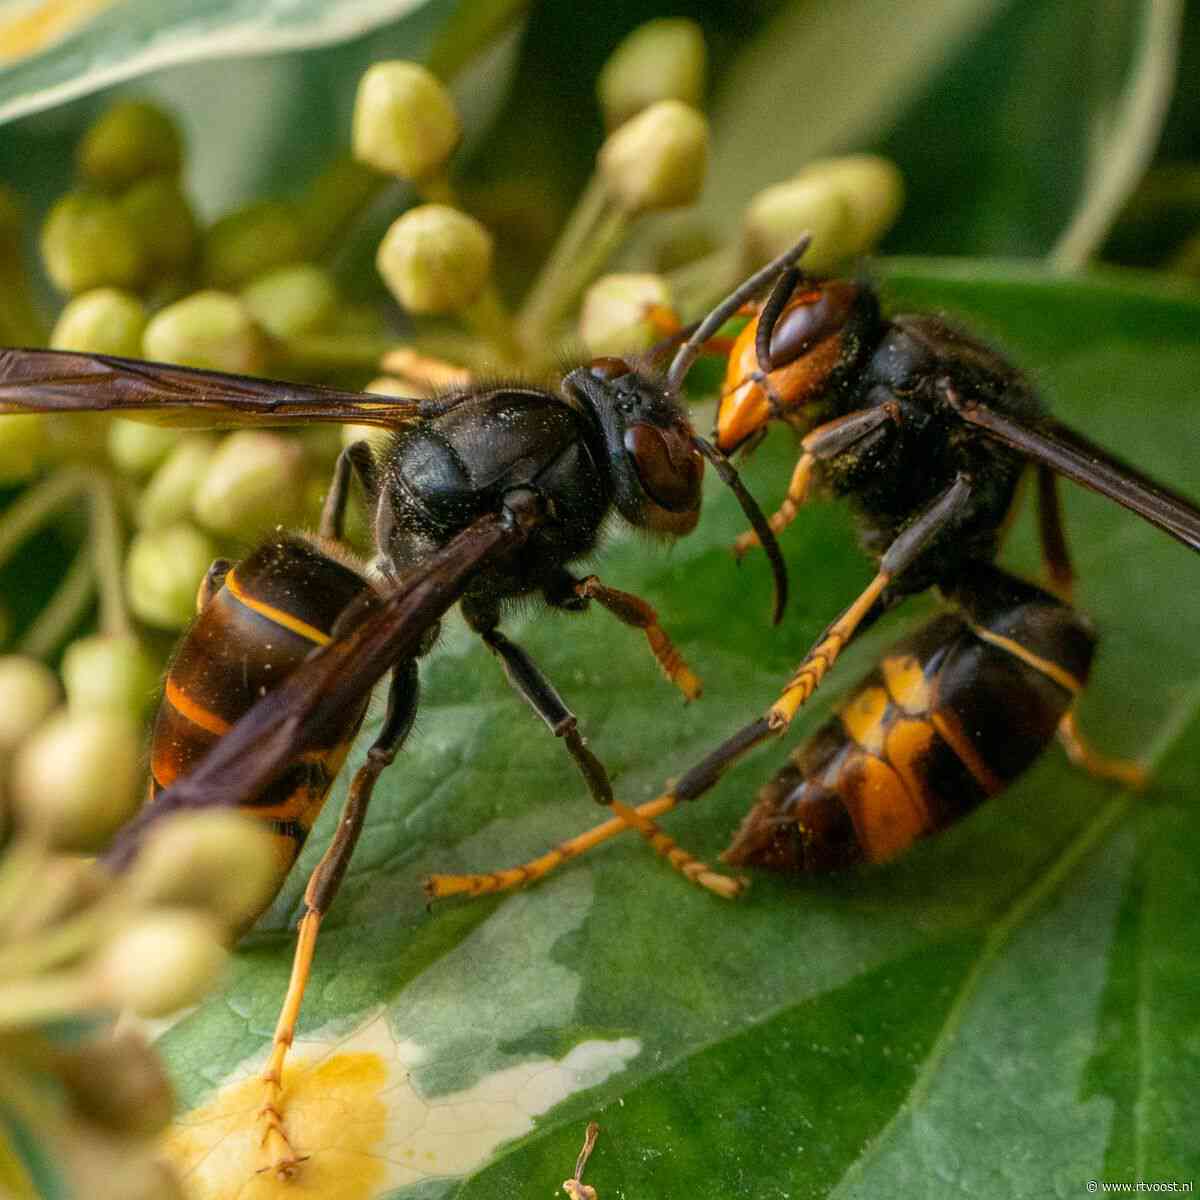 Aziatische hoornaar duikt op in Overijssel: "Hoe eerder we ze kunnen vangen, hoe beter"